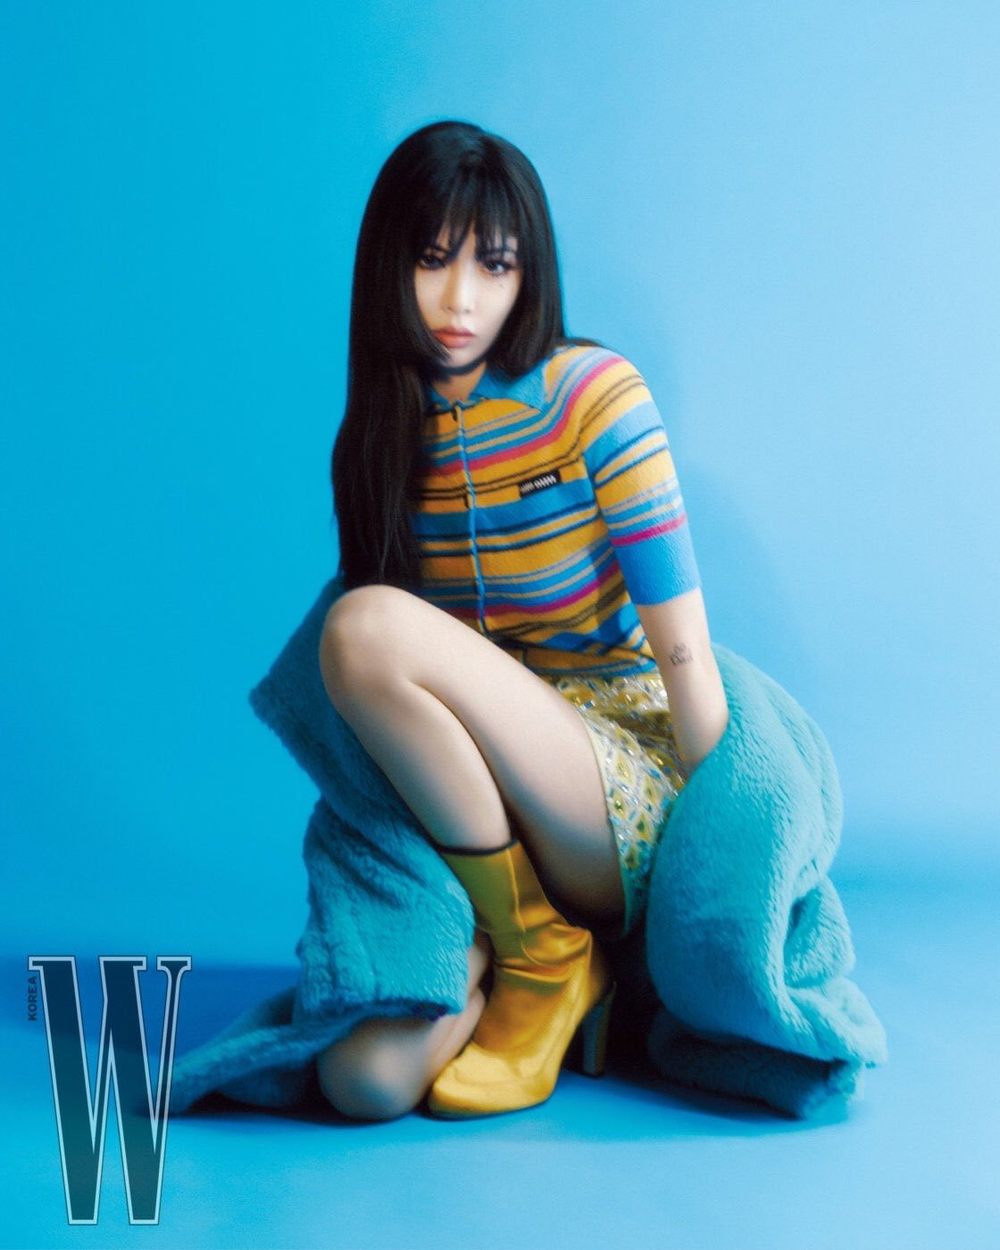  
Hình ảnh của HyunA trên tạp chí số tháng 2. (Ảnh: W Korea)